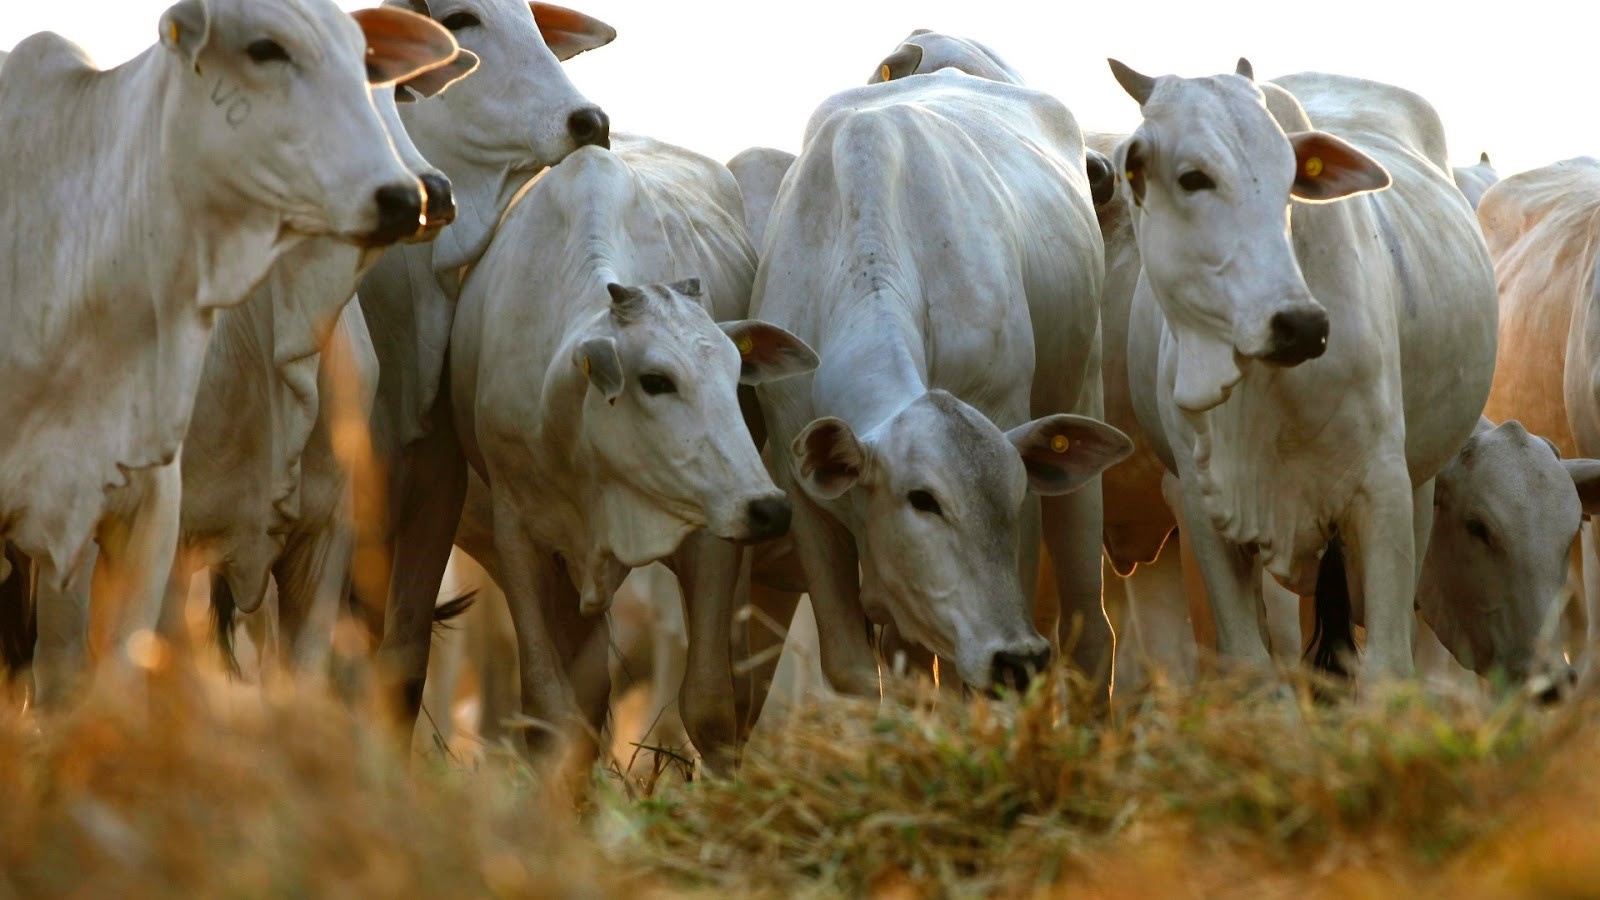 Nova legislação pretende melhorar relação comercial entre criadores de gado e donos de frigoríficos